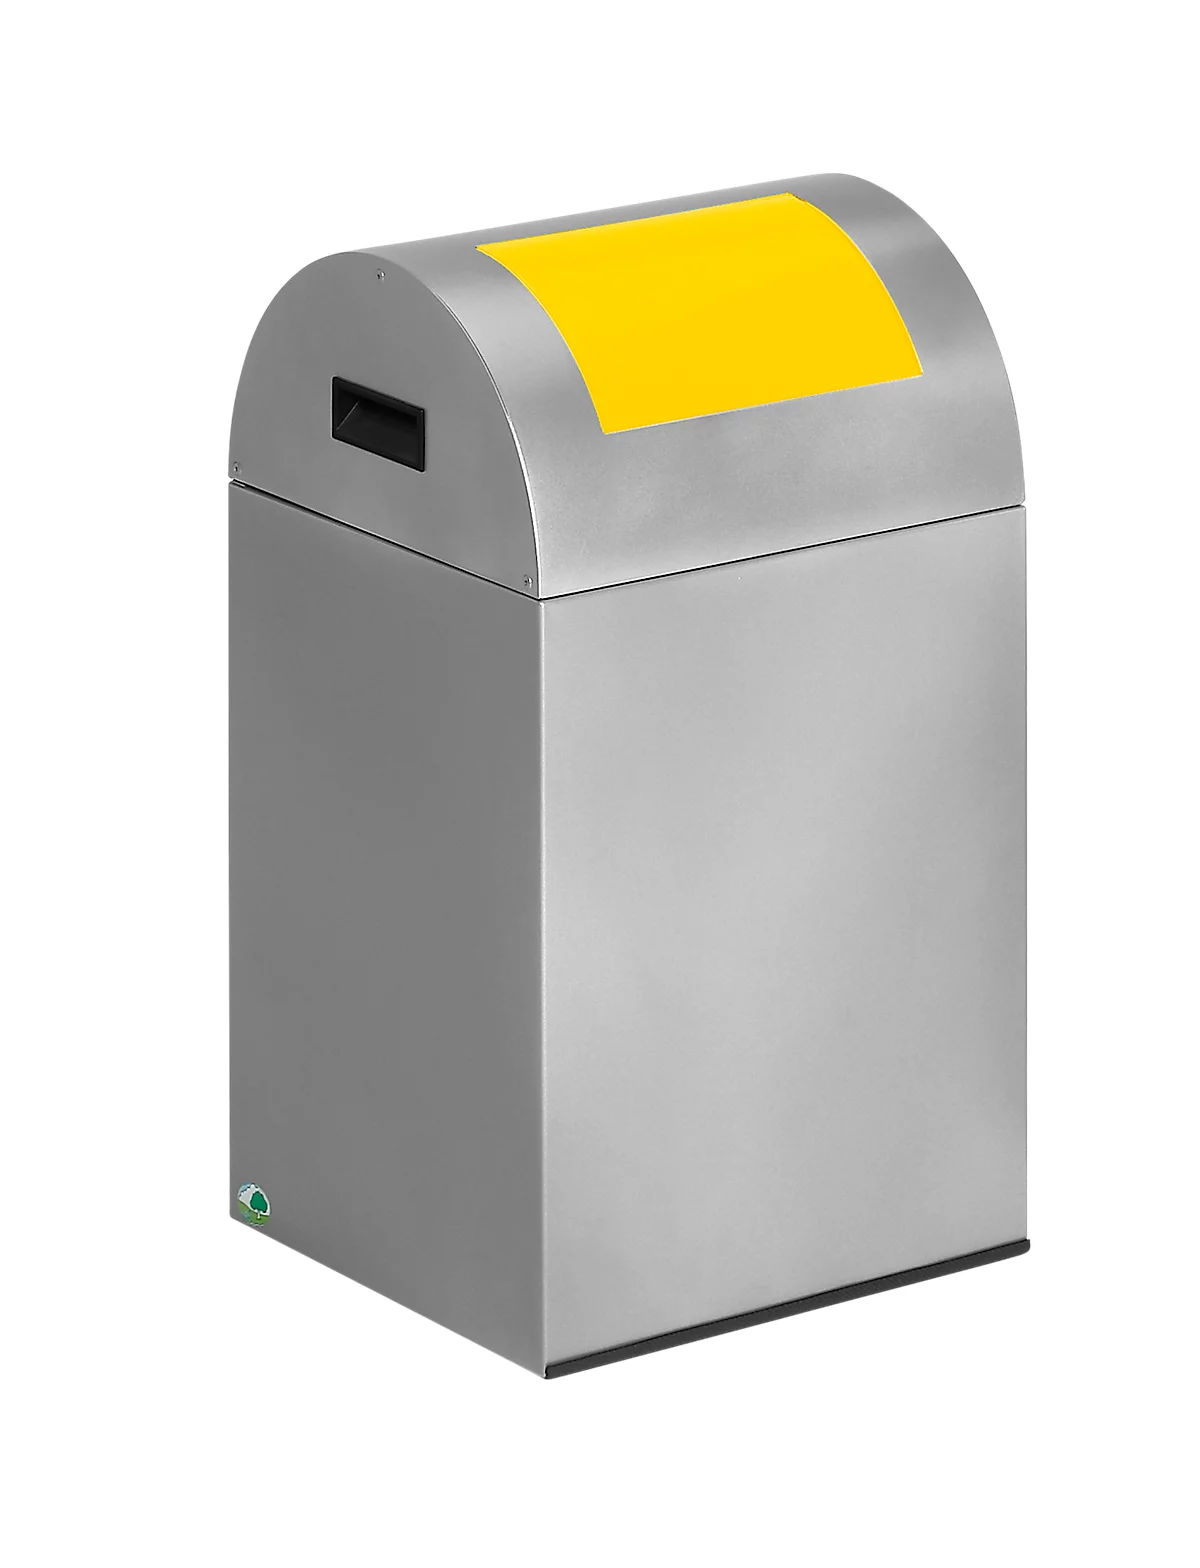 Zelfblussende afvalverzamelaar voor recycleerbaar afval 40R, zilver/geel